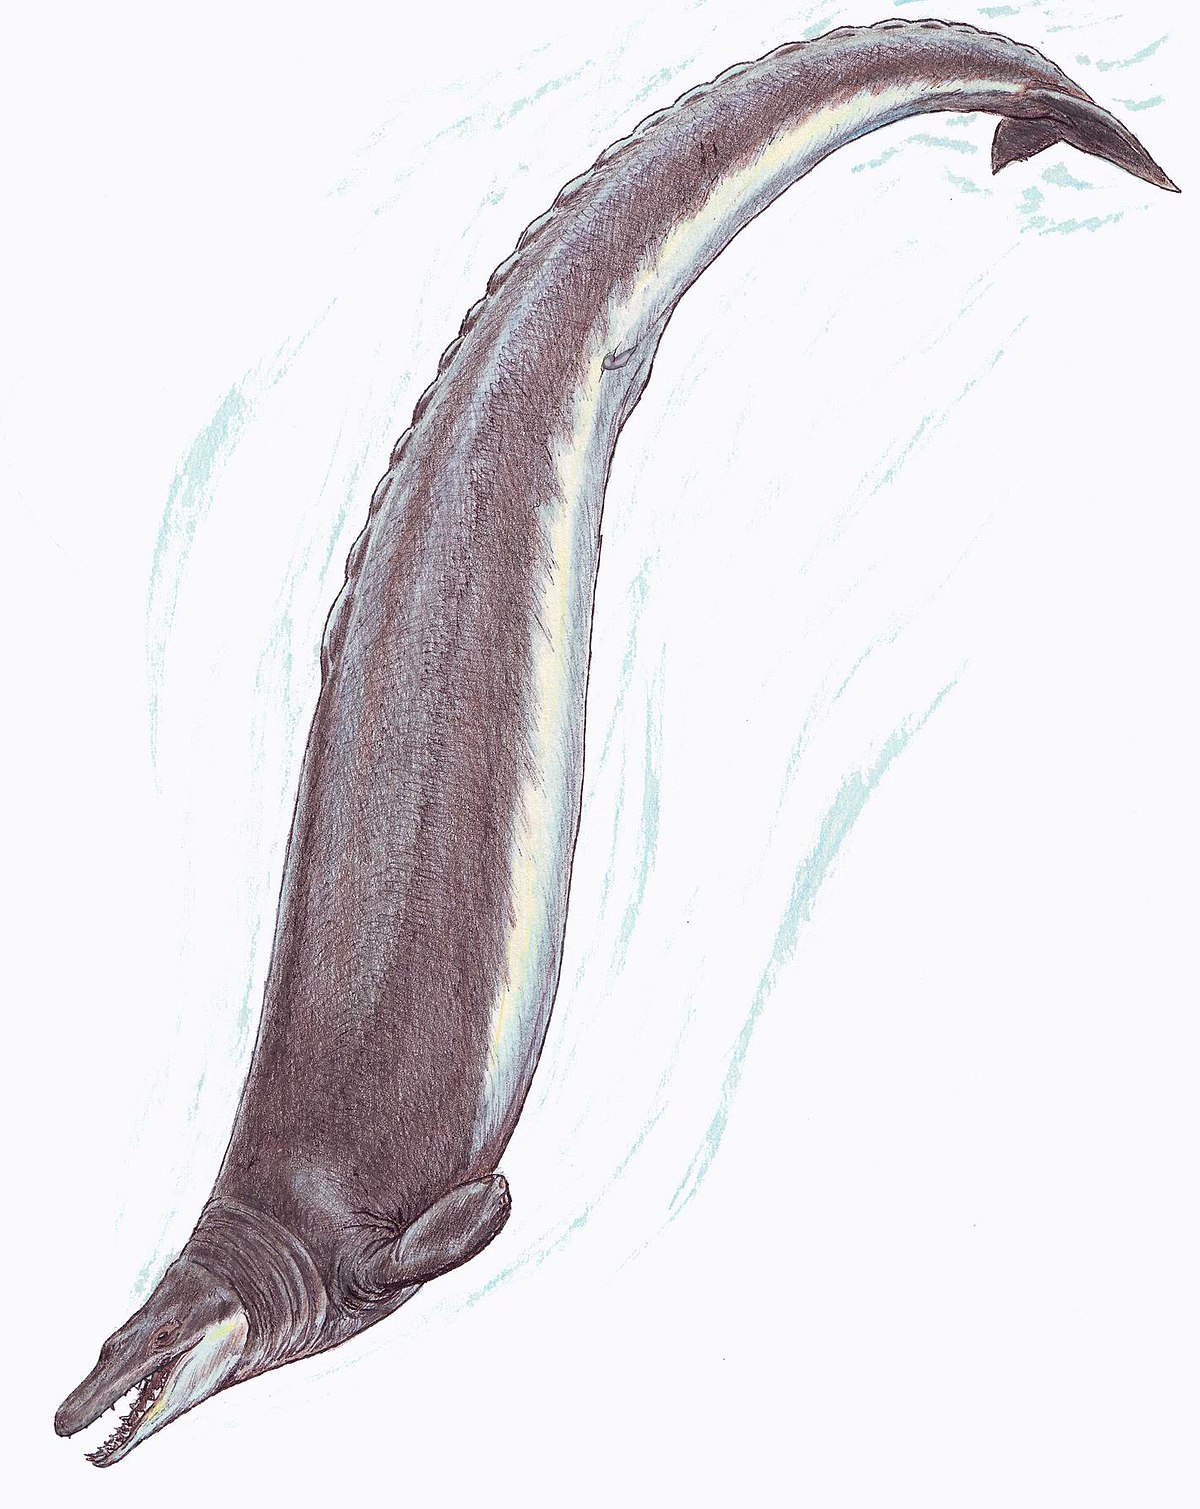 バシロサウルス - Wikipedia